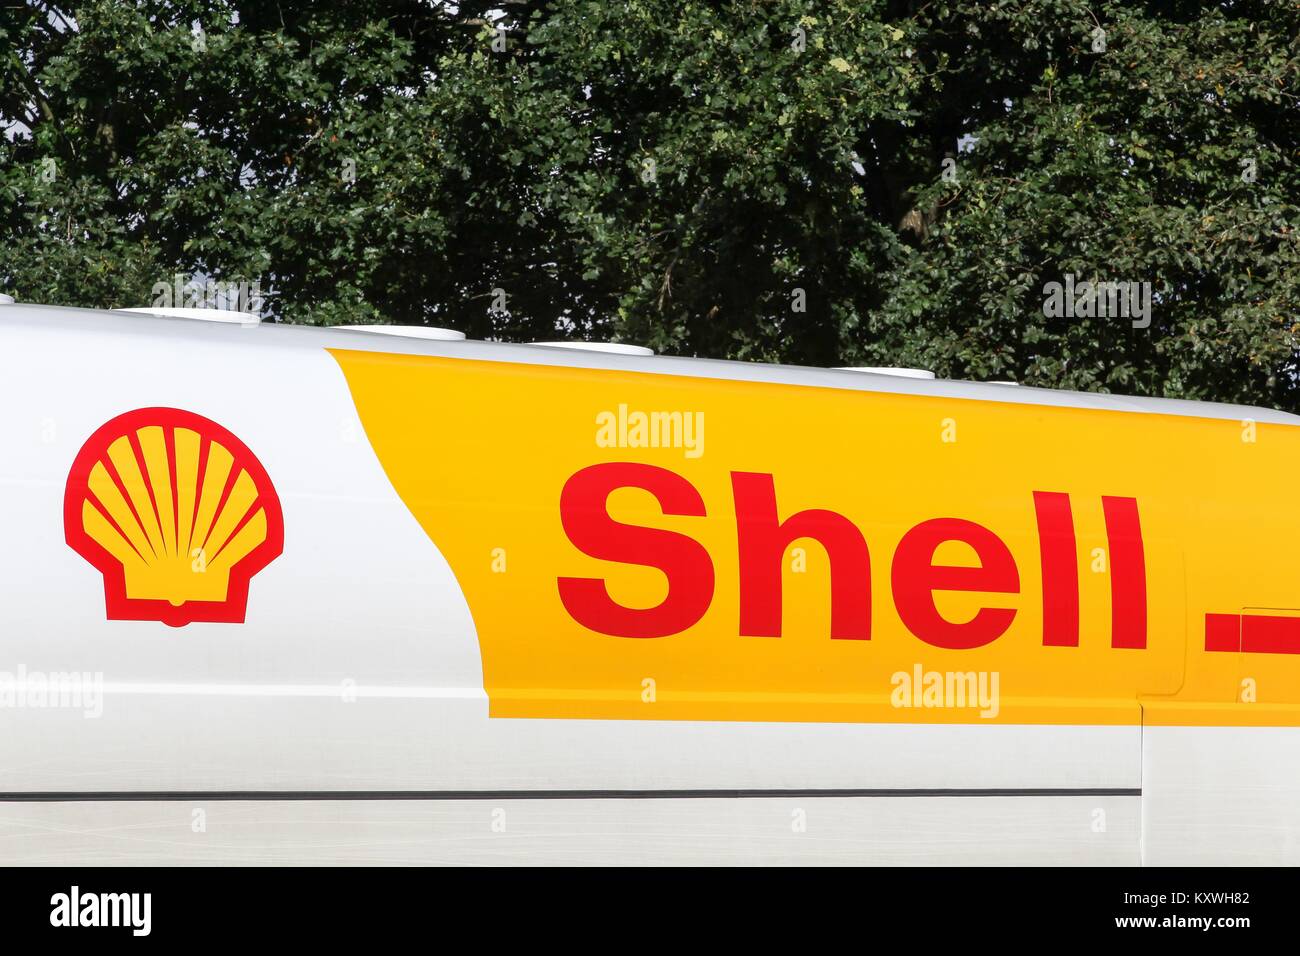 Hylke Banning, Danemark - 15 septembre 2017 : Shell logo sur un camion. Shell est une multinationale néerlandaise de pétrole et de gaz Banque D'Images